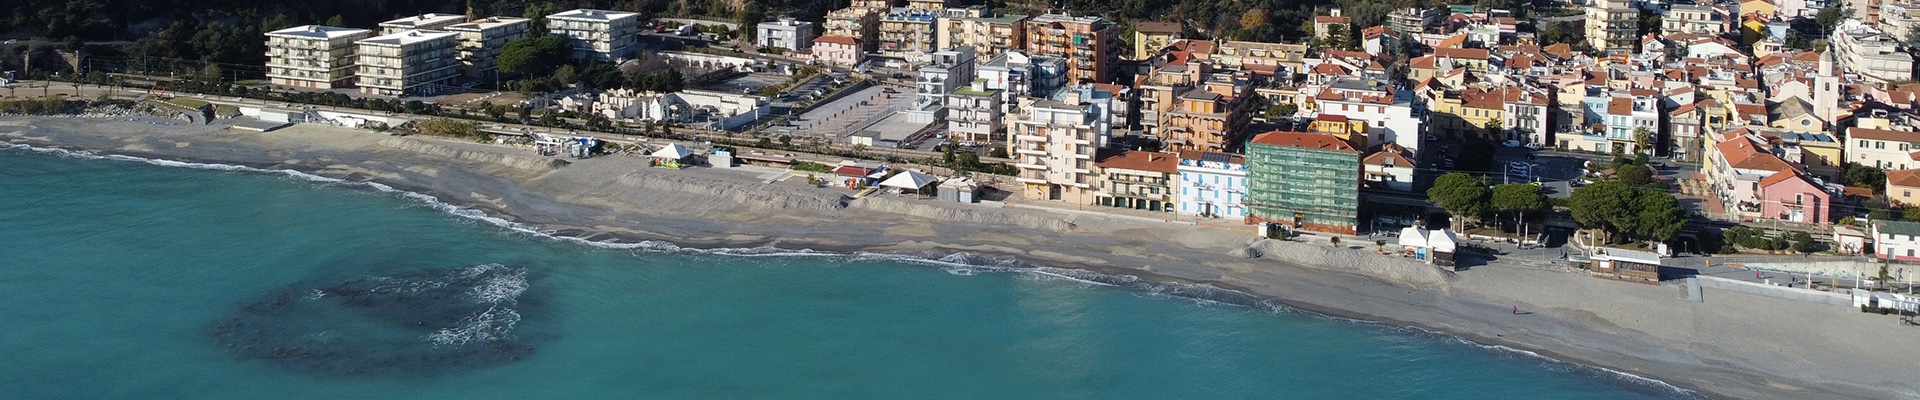 Il mare della Liguria, a Borghetto